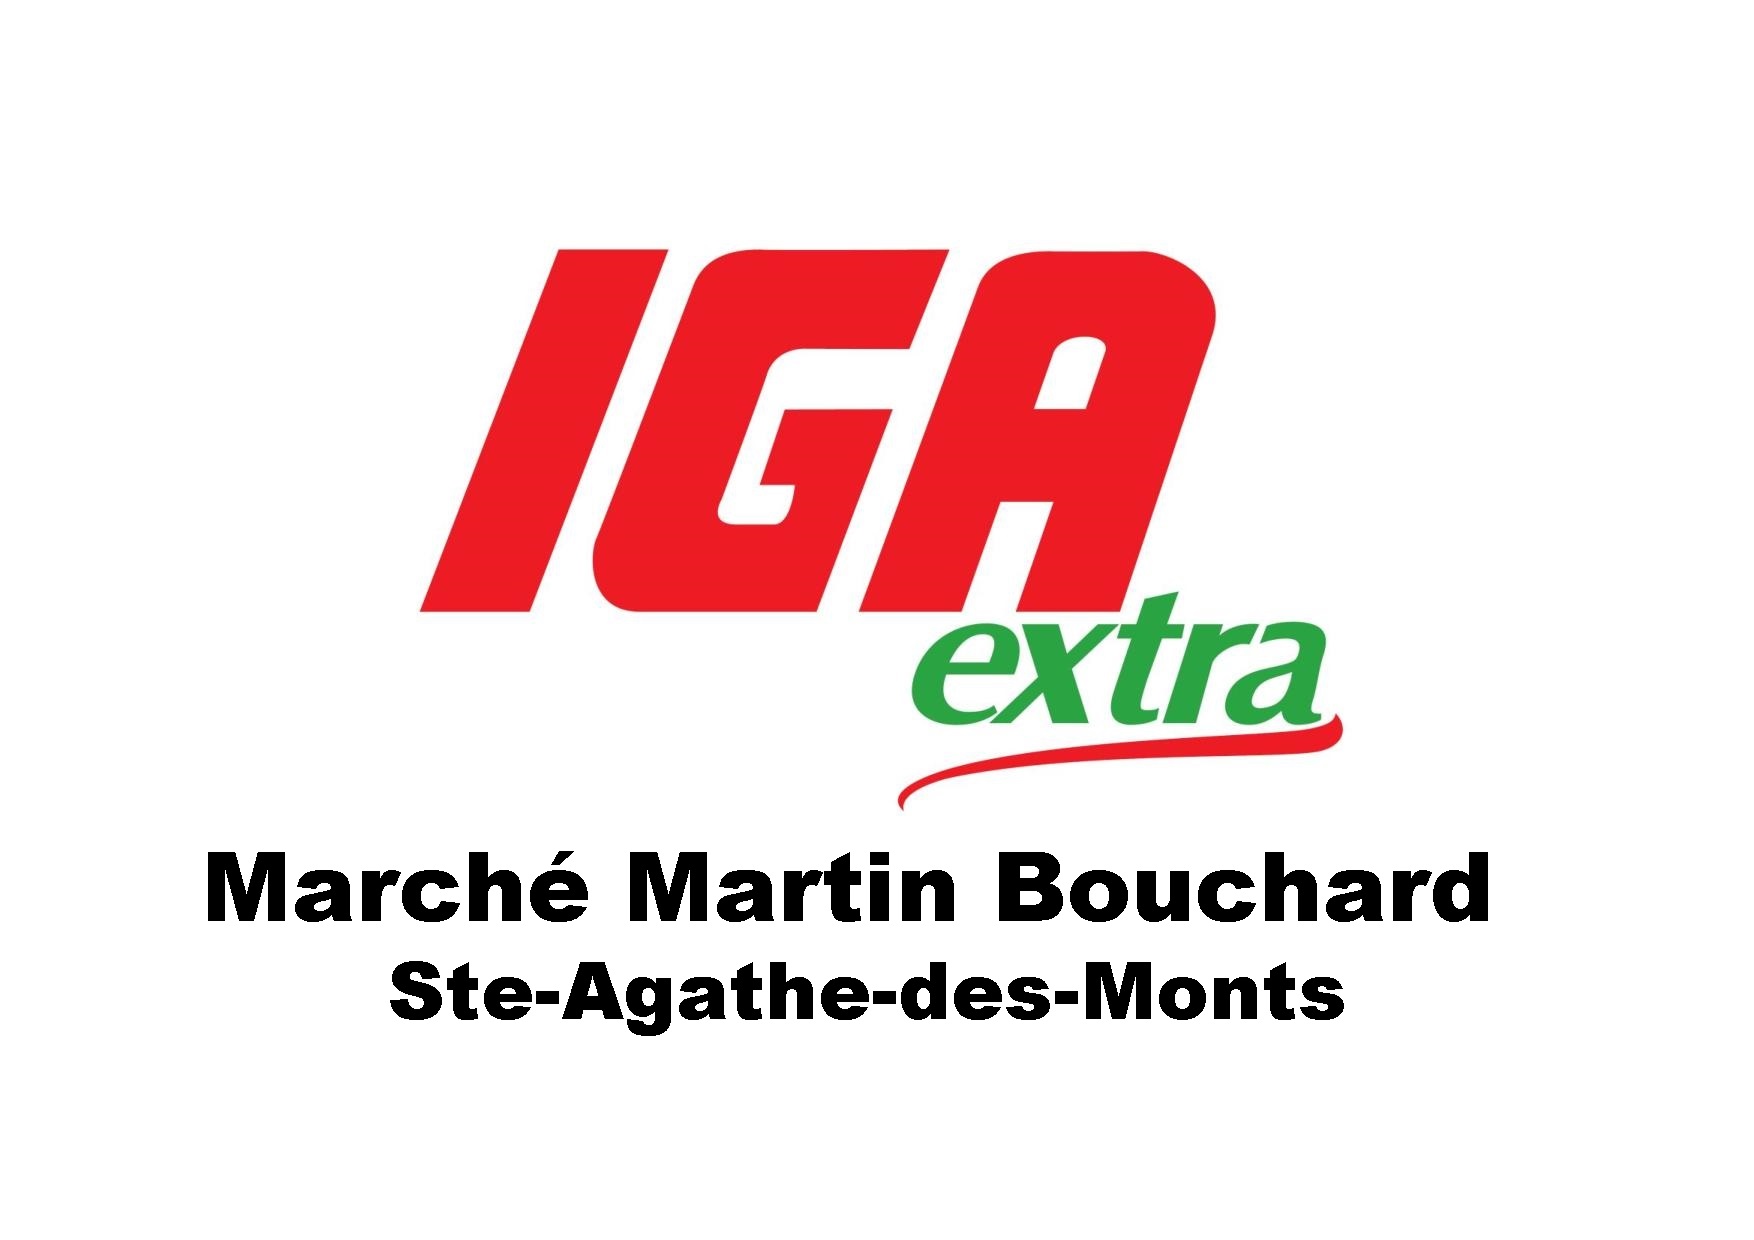 IGA EXTRA MARCHE M. BOUCHARD